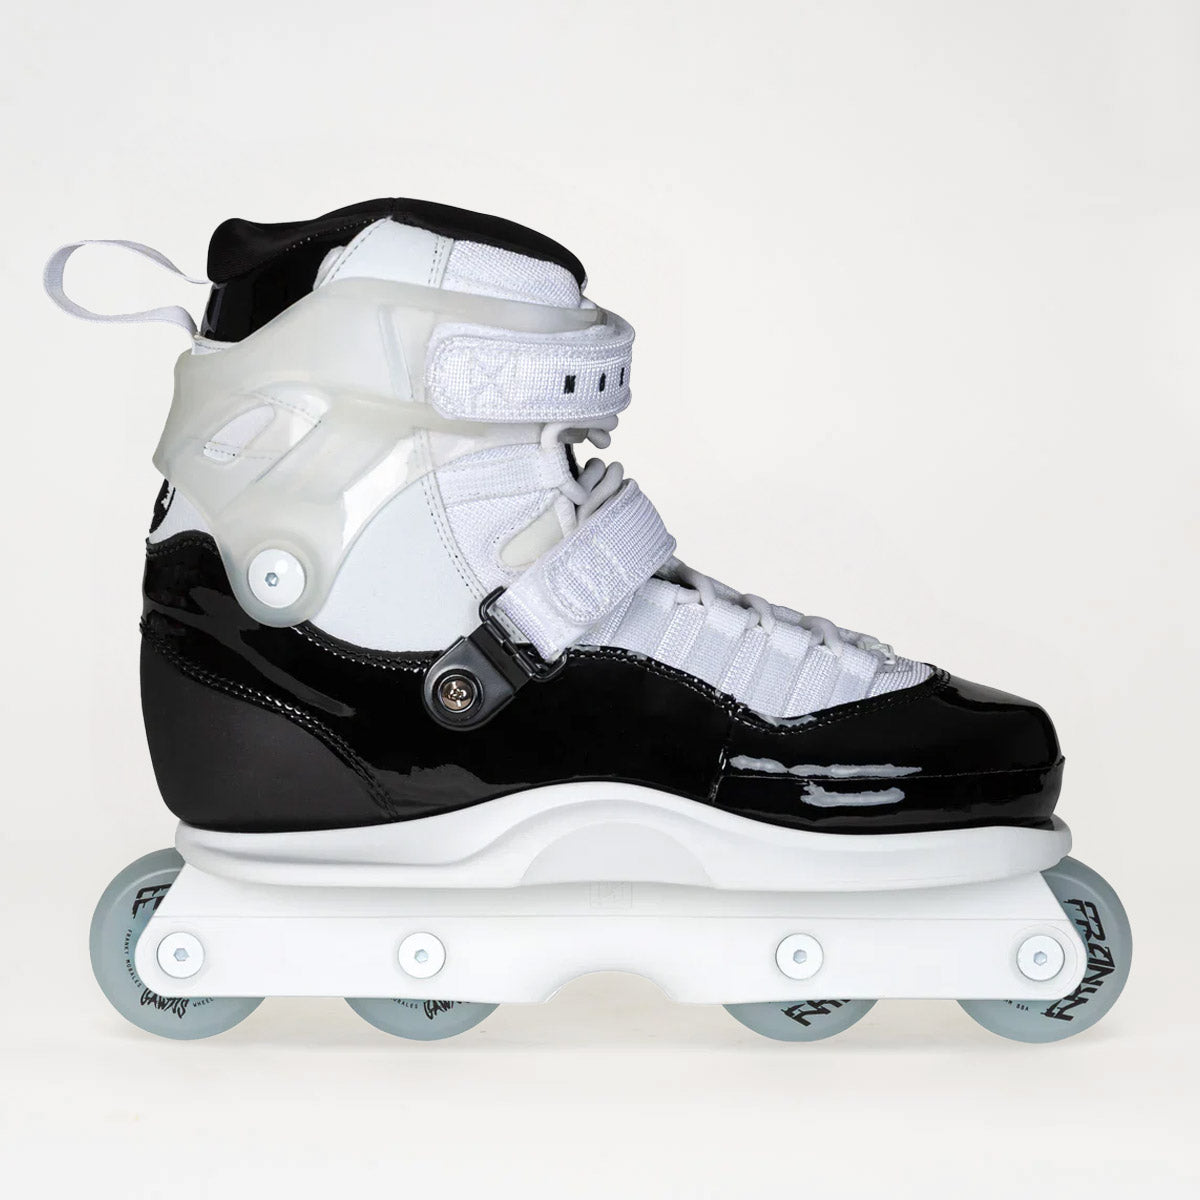 New Aggressive Skating Products – Loco Skates